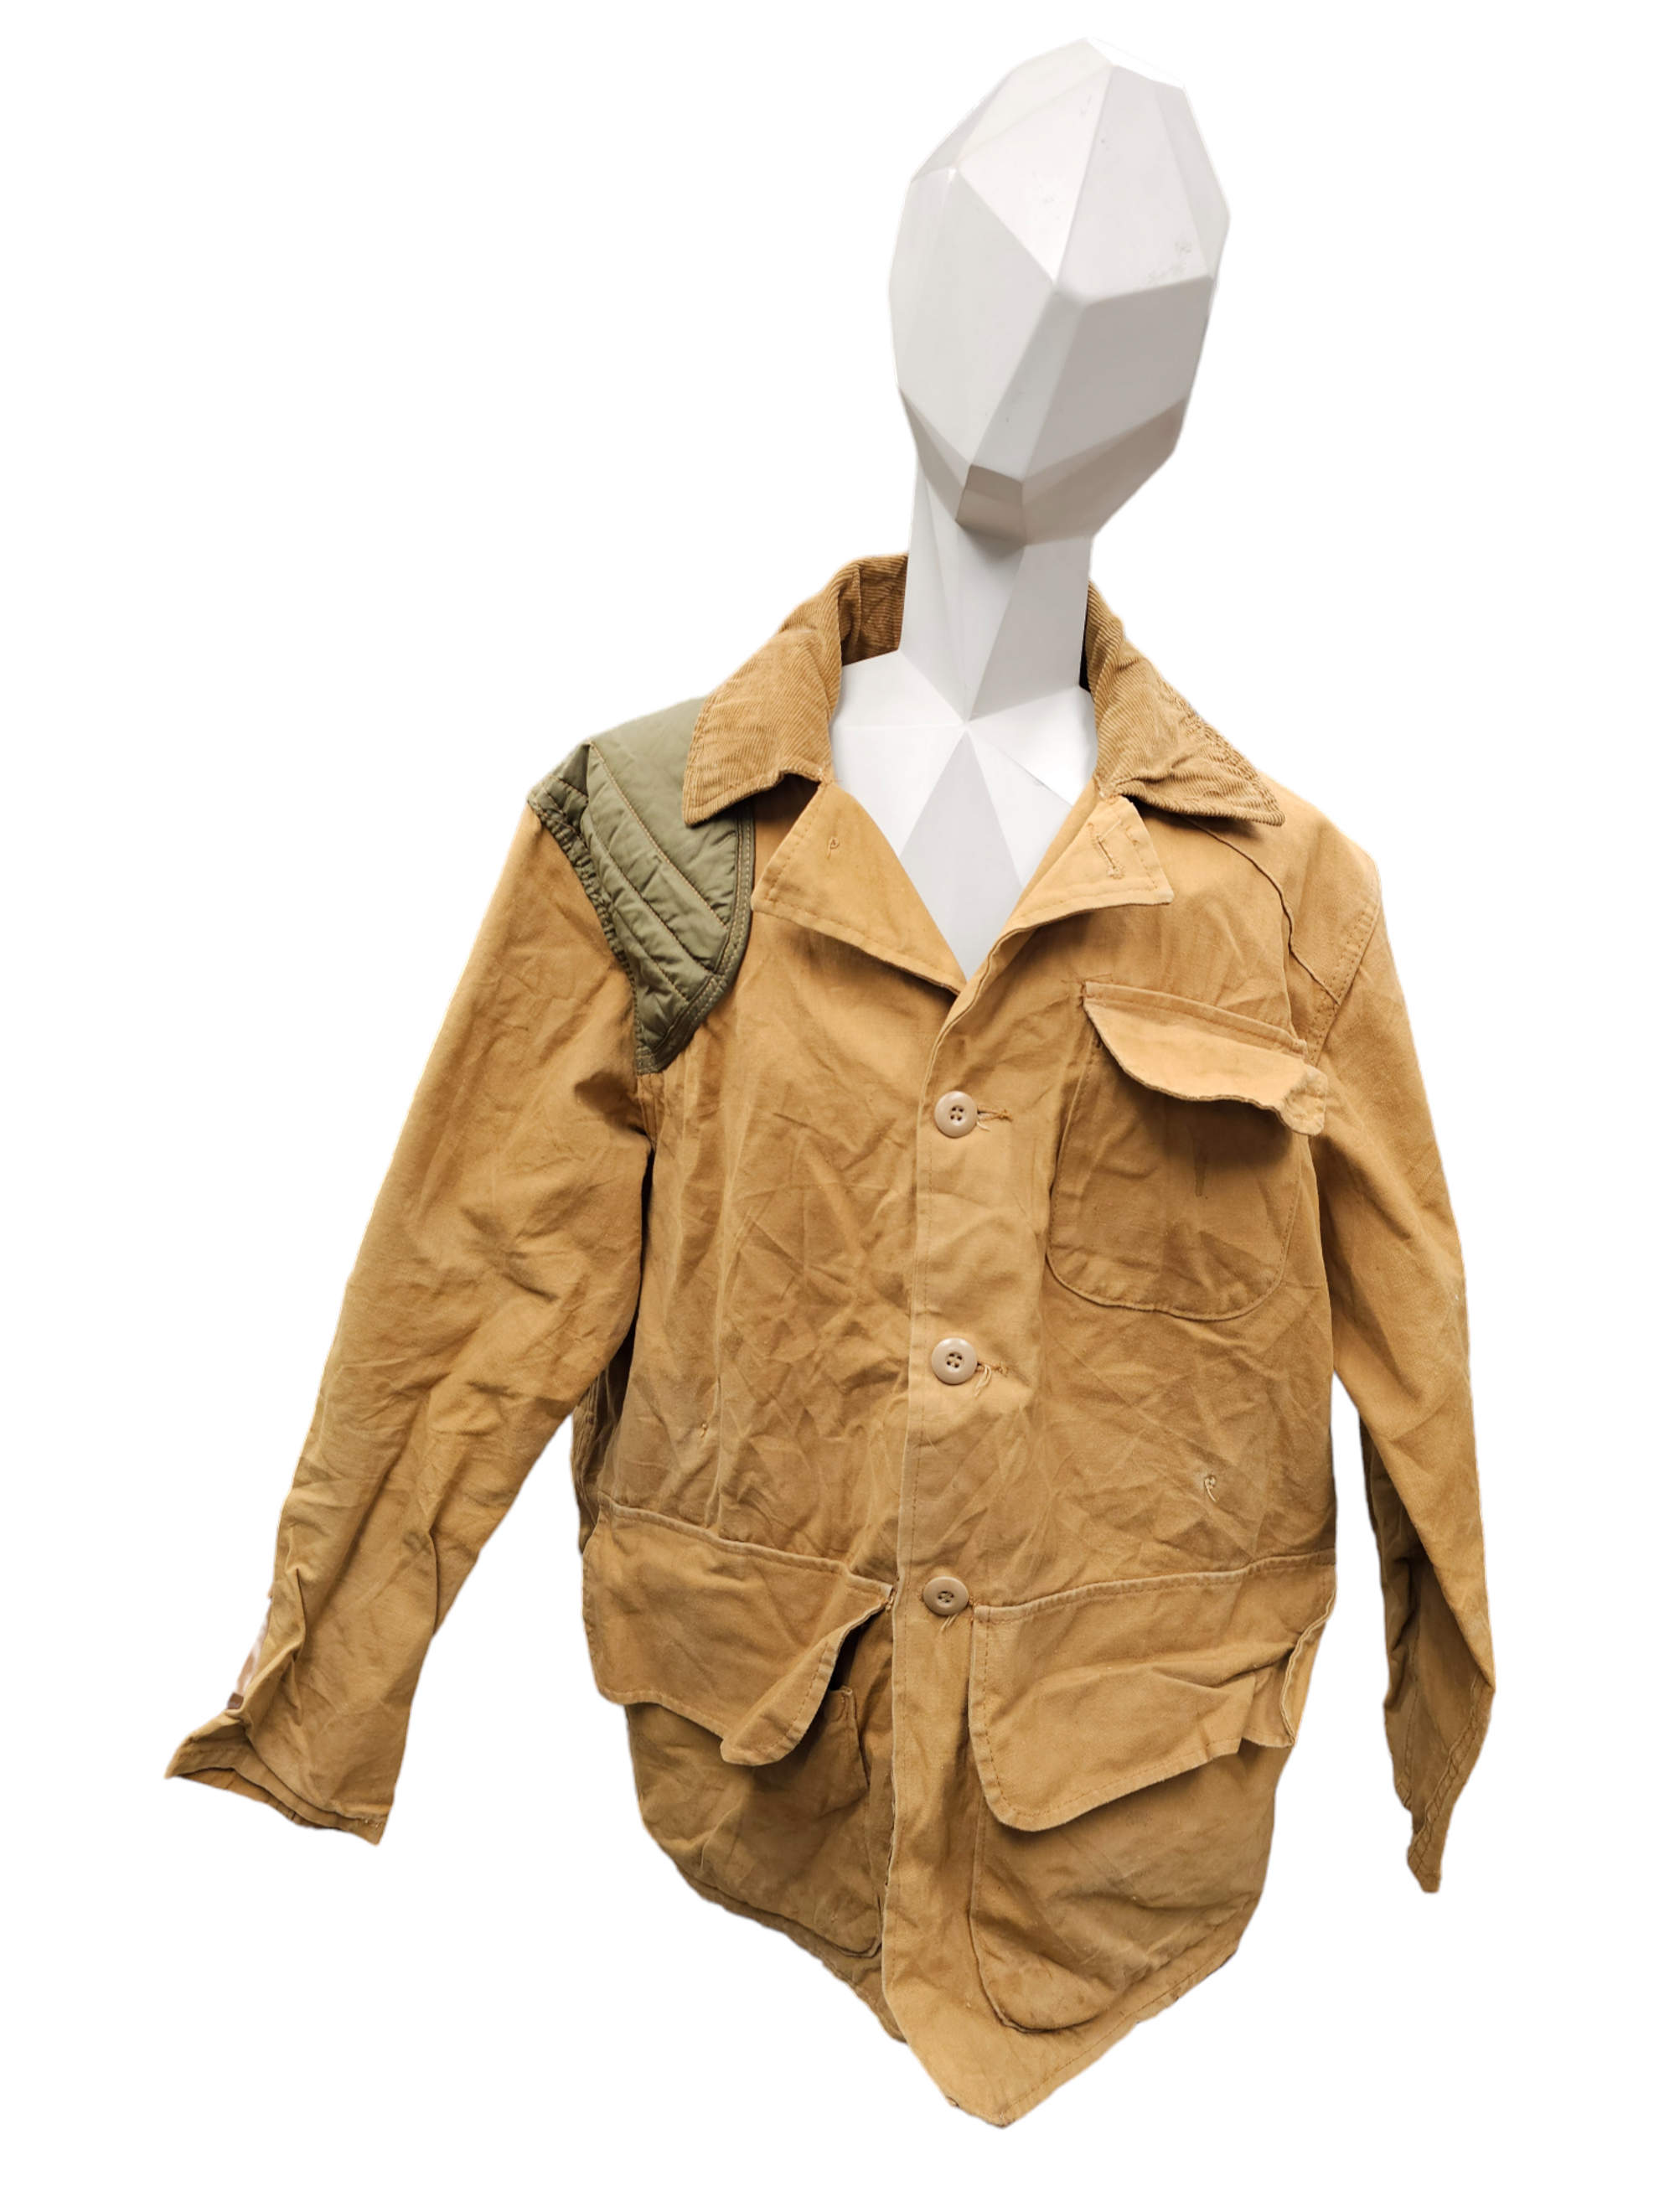 Vintage SafTBak Hunting Jacket - 40